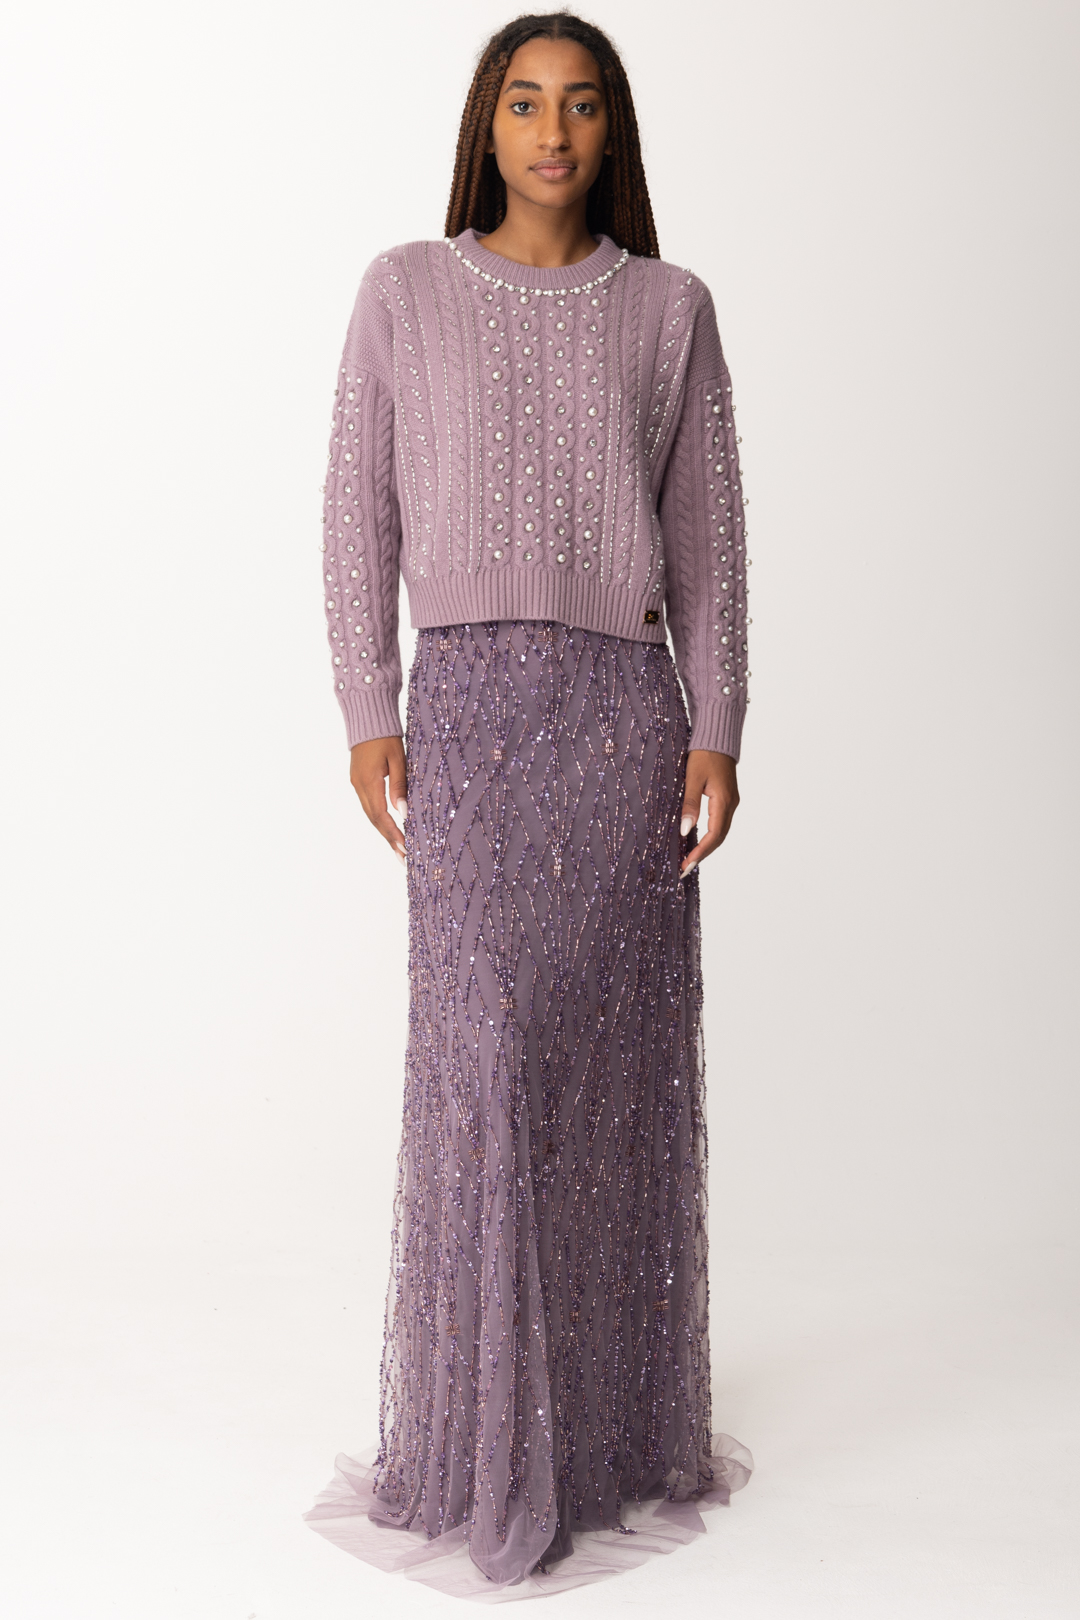 Vista previa: Elisabetta Franchi Jersey de lana con bordado de perlas y strass CANDY VIOLET